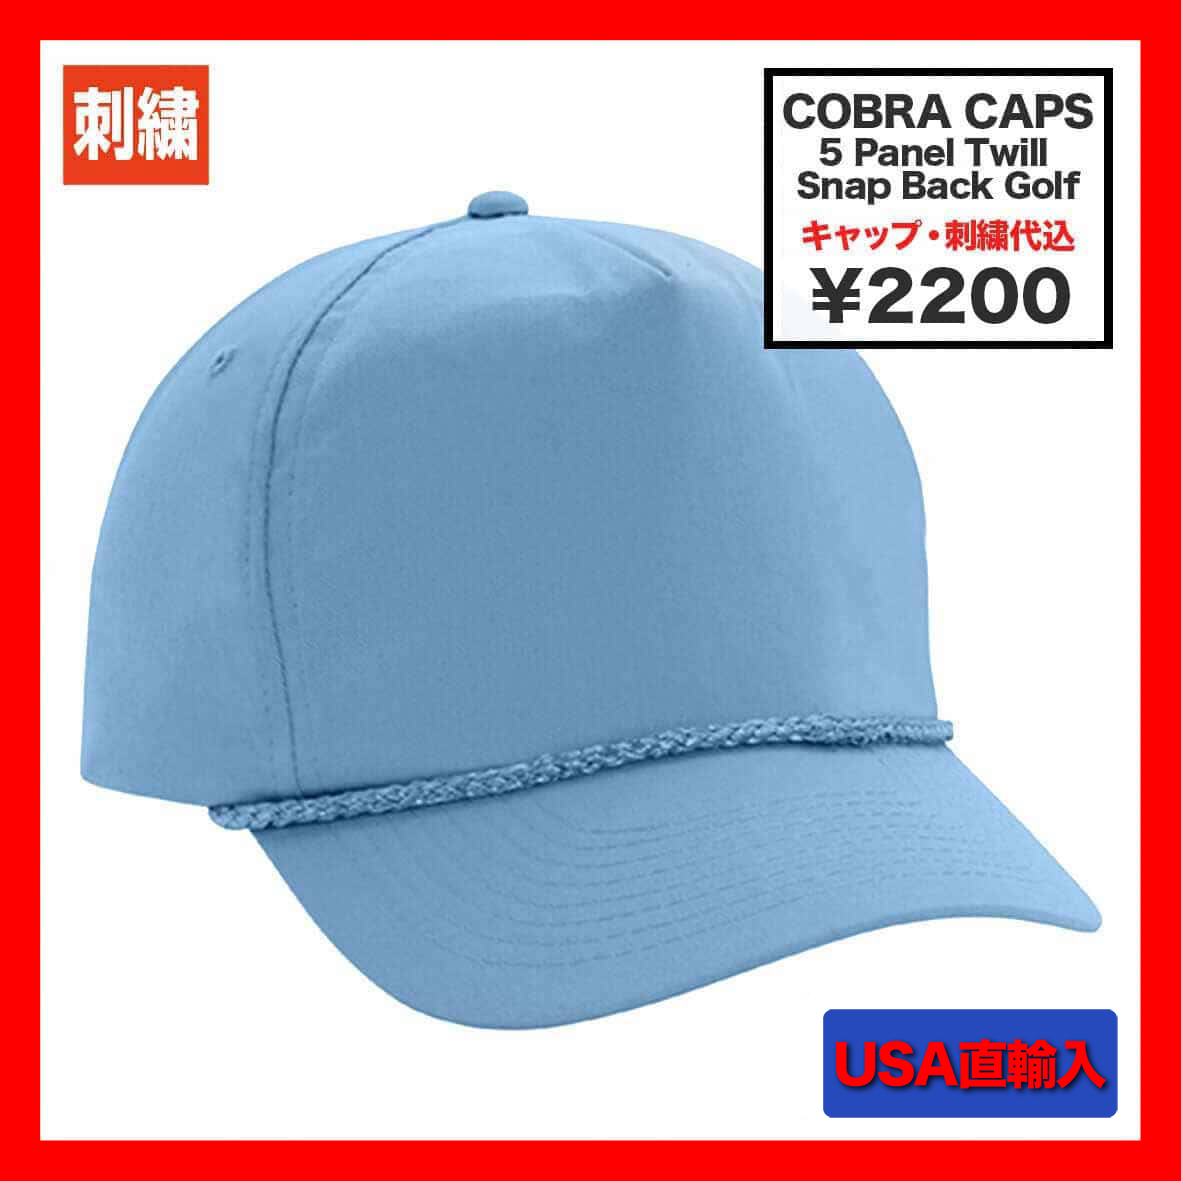 【在庫限り】 Cobra Caps コブラ キャップス 5 Panel Twill Snap Back Golf (品番TSG)